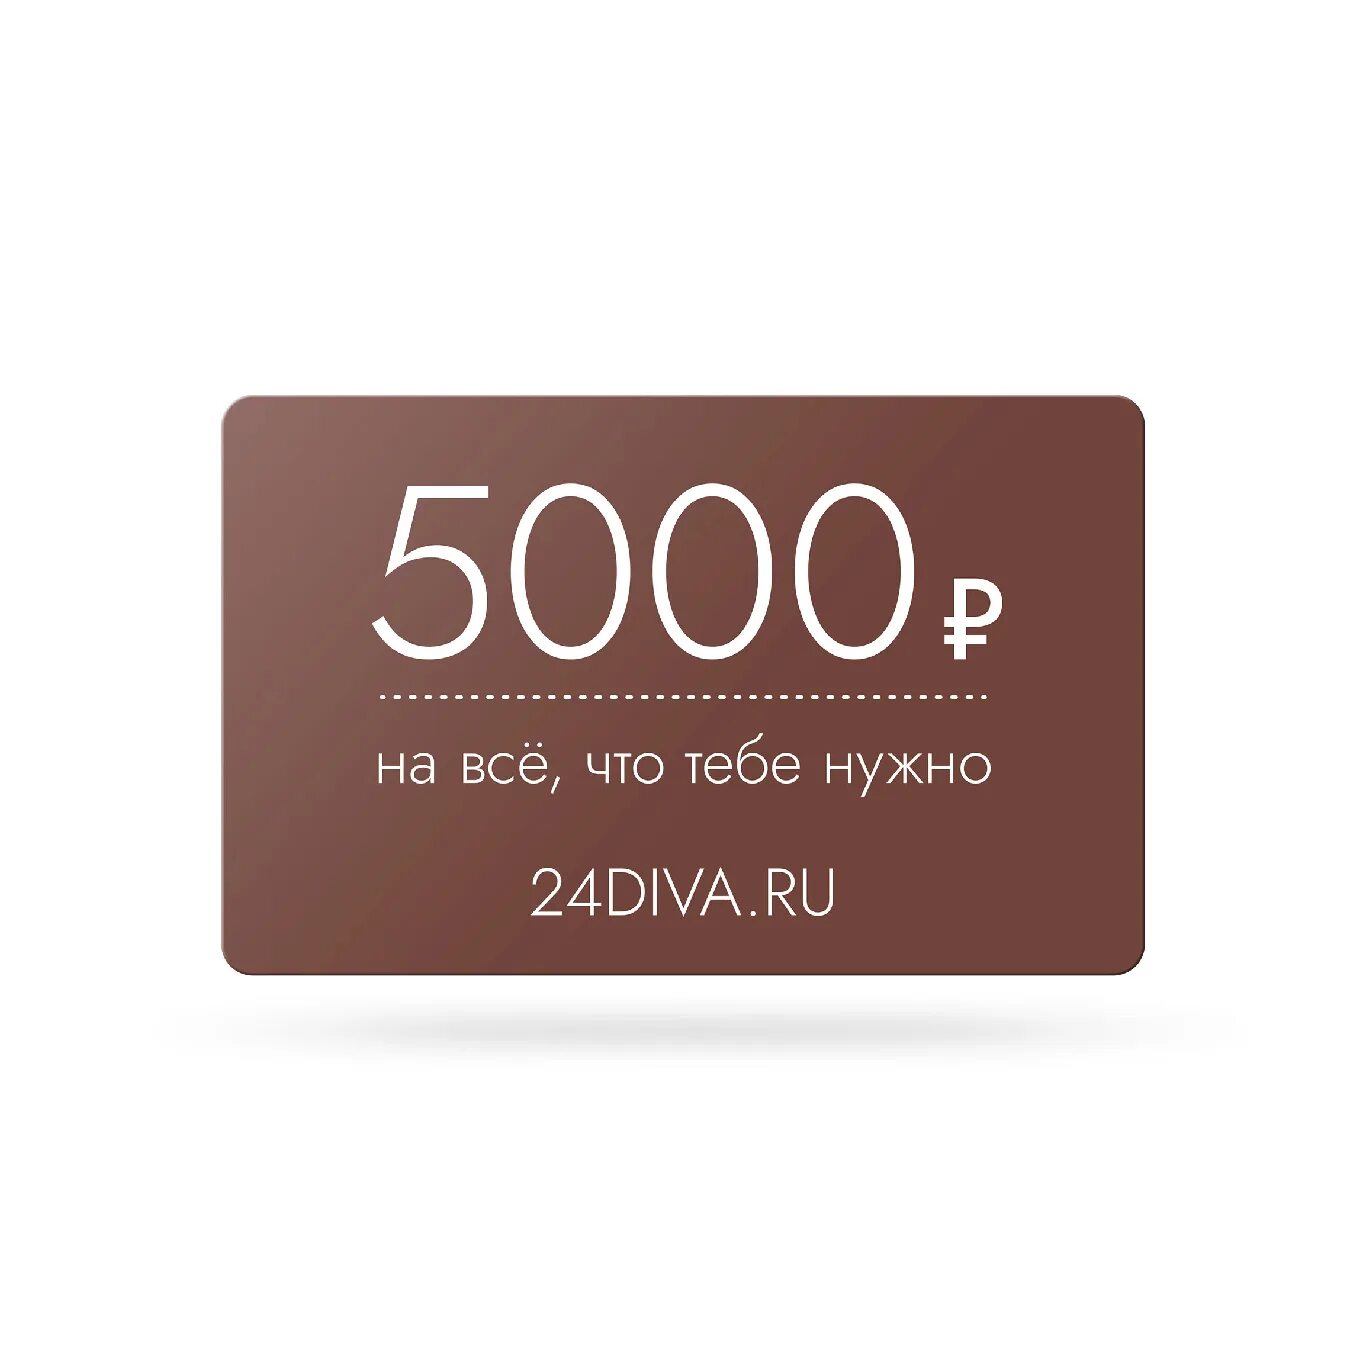 Сертификат на 5000 рублей. Подарочный сертификат на 5000 рублей. Сертификат на 5000 руб. Подарочный сертификат на 5000 рублей шаблон.